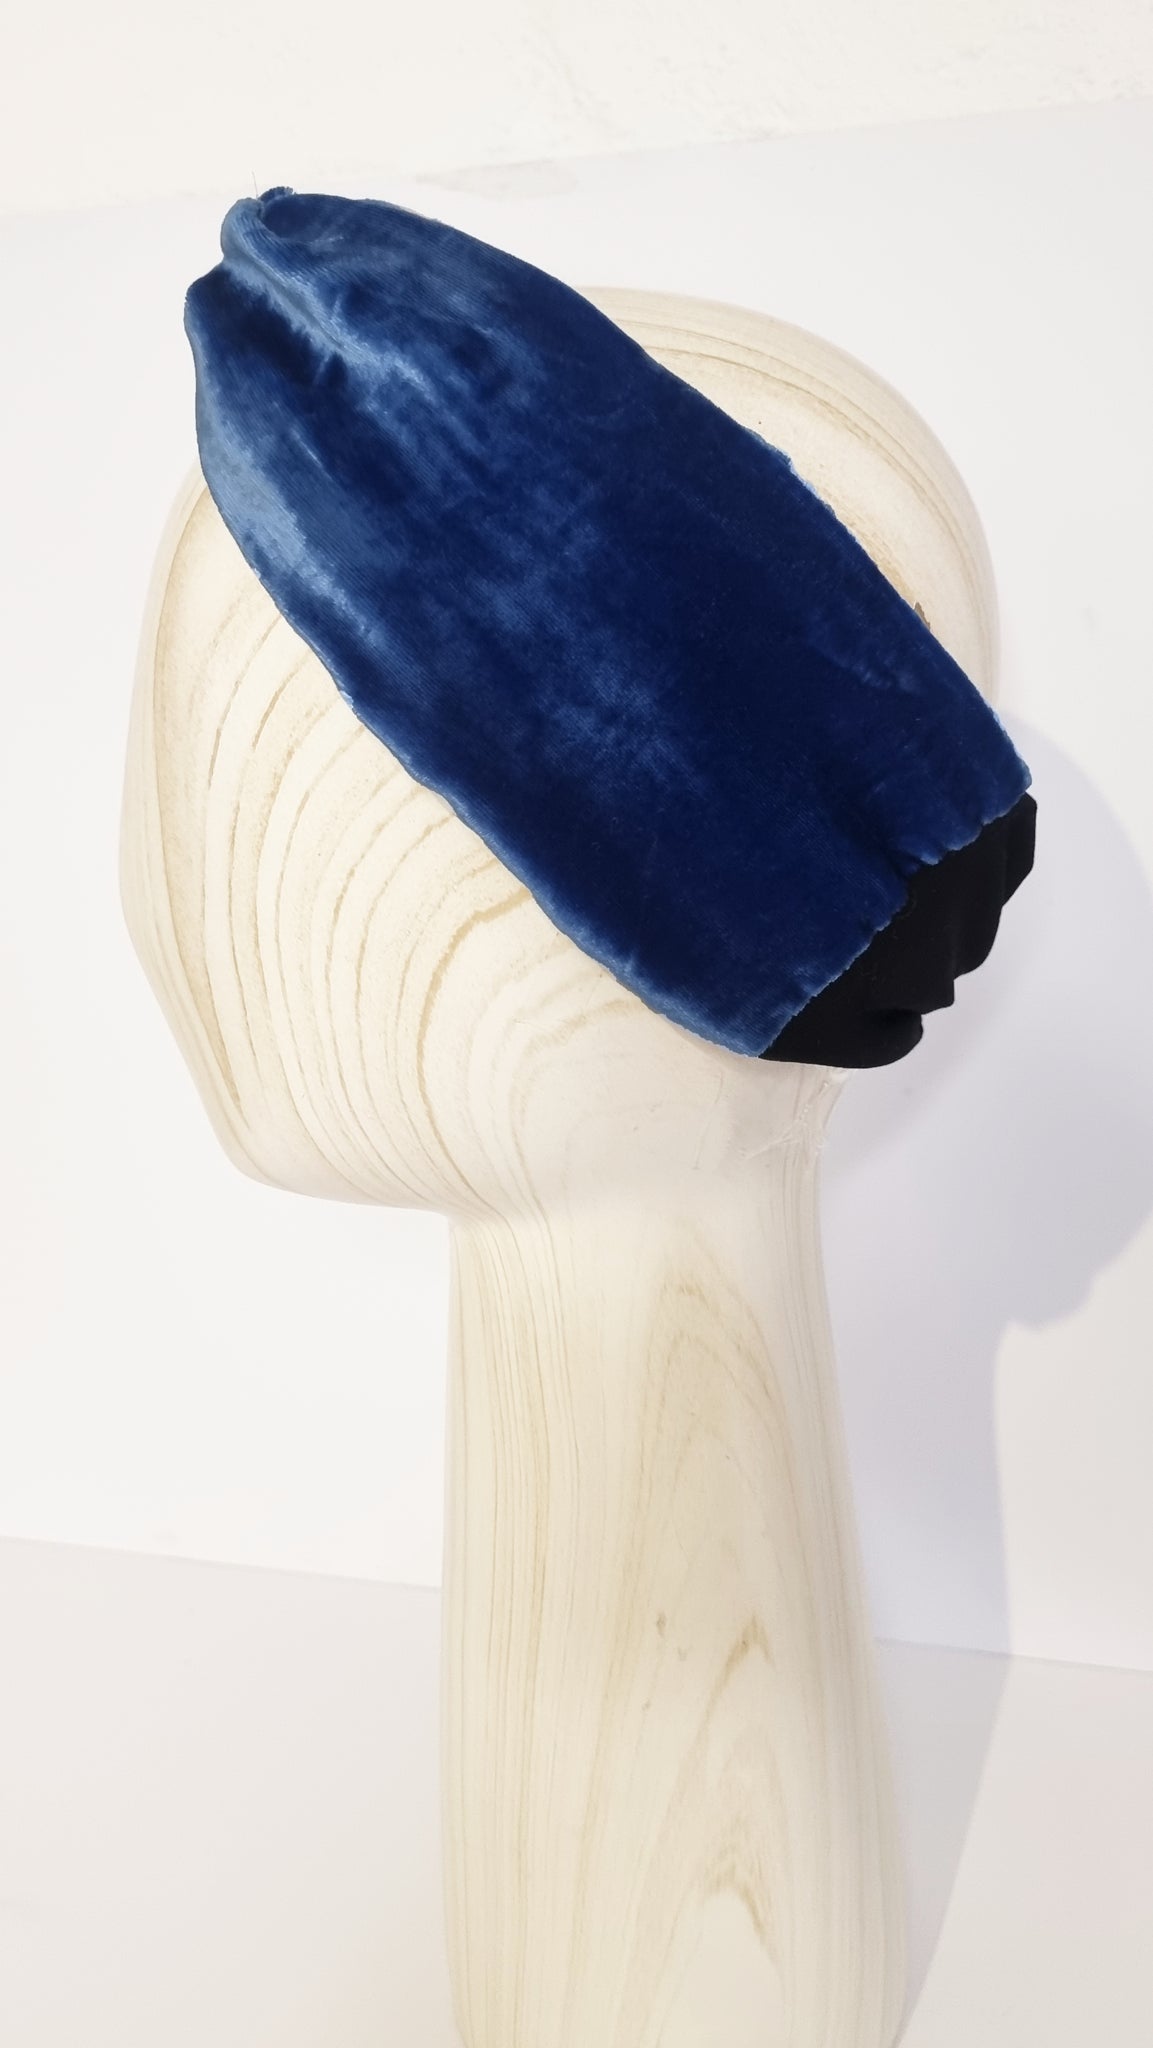 Liz Turban Headband Velvet in Royal Blue